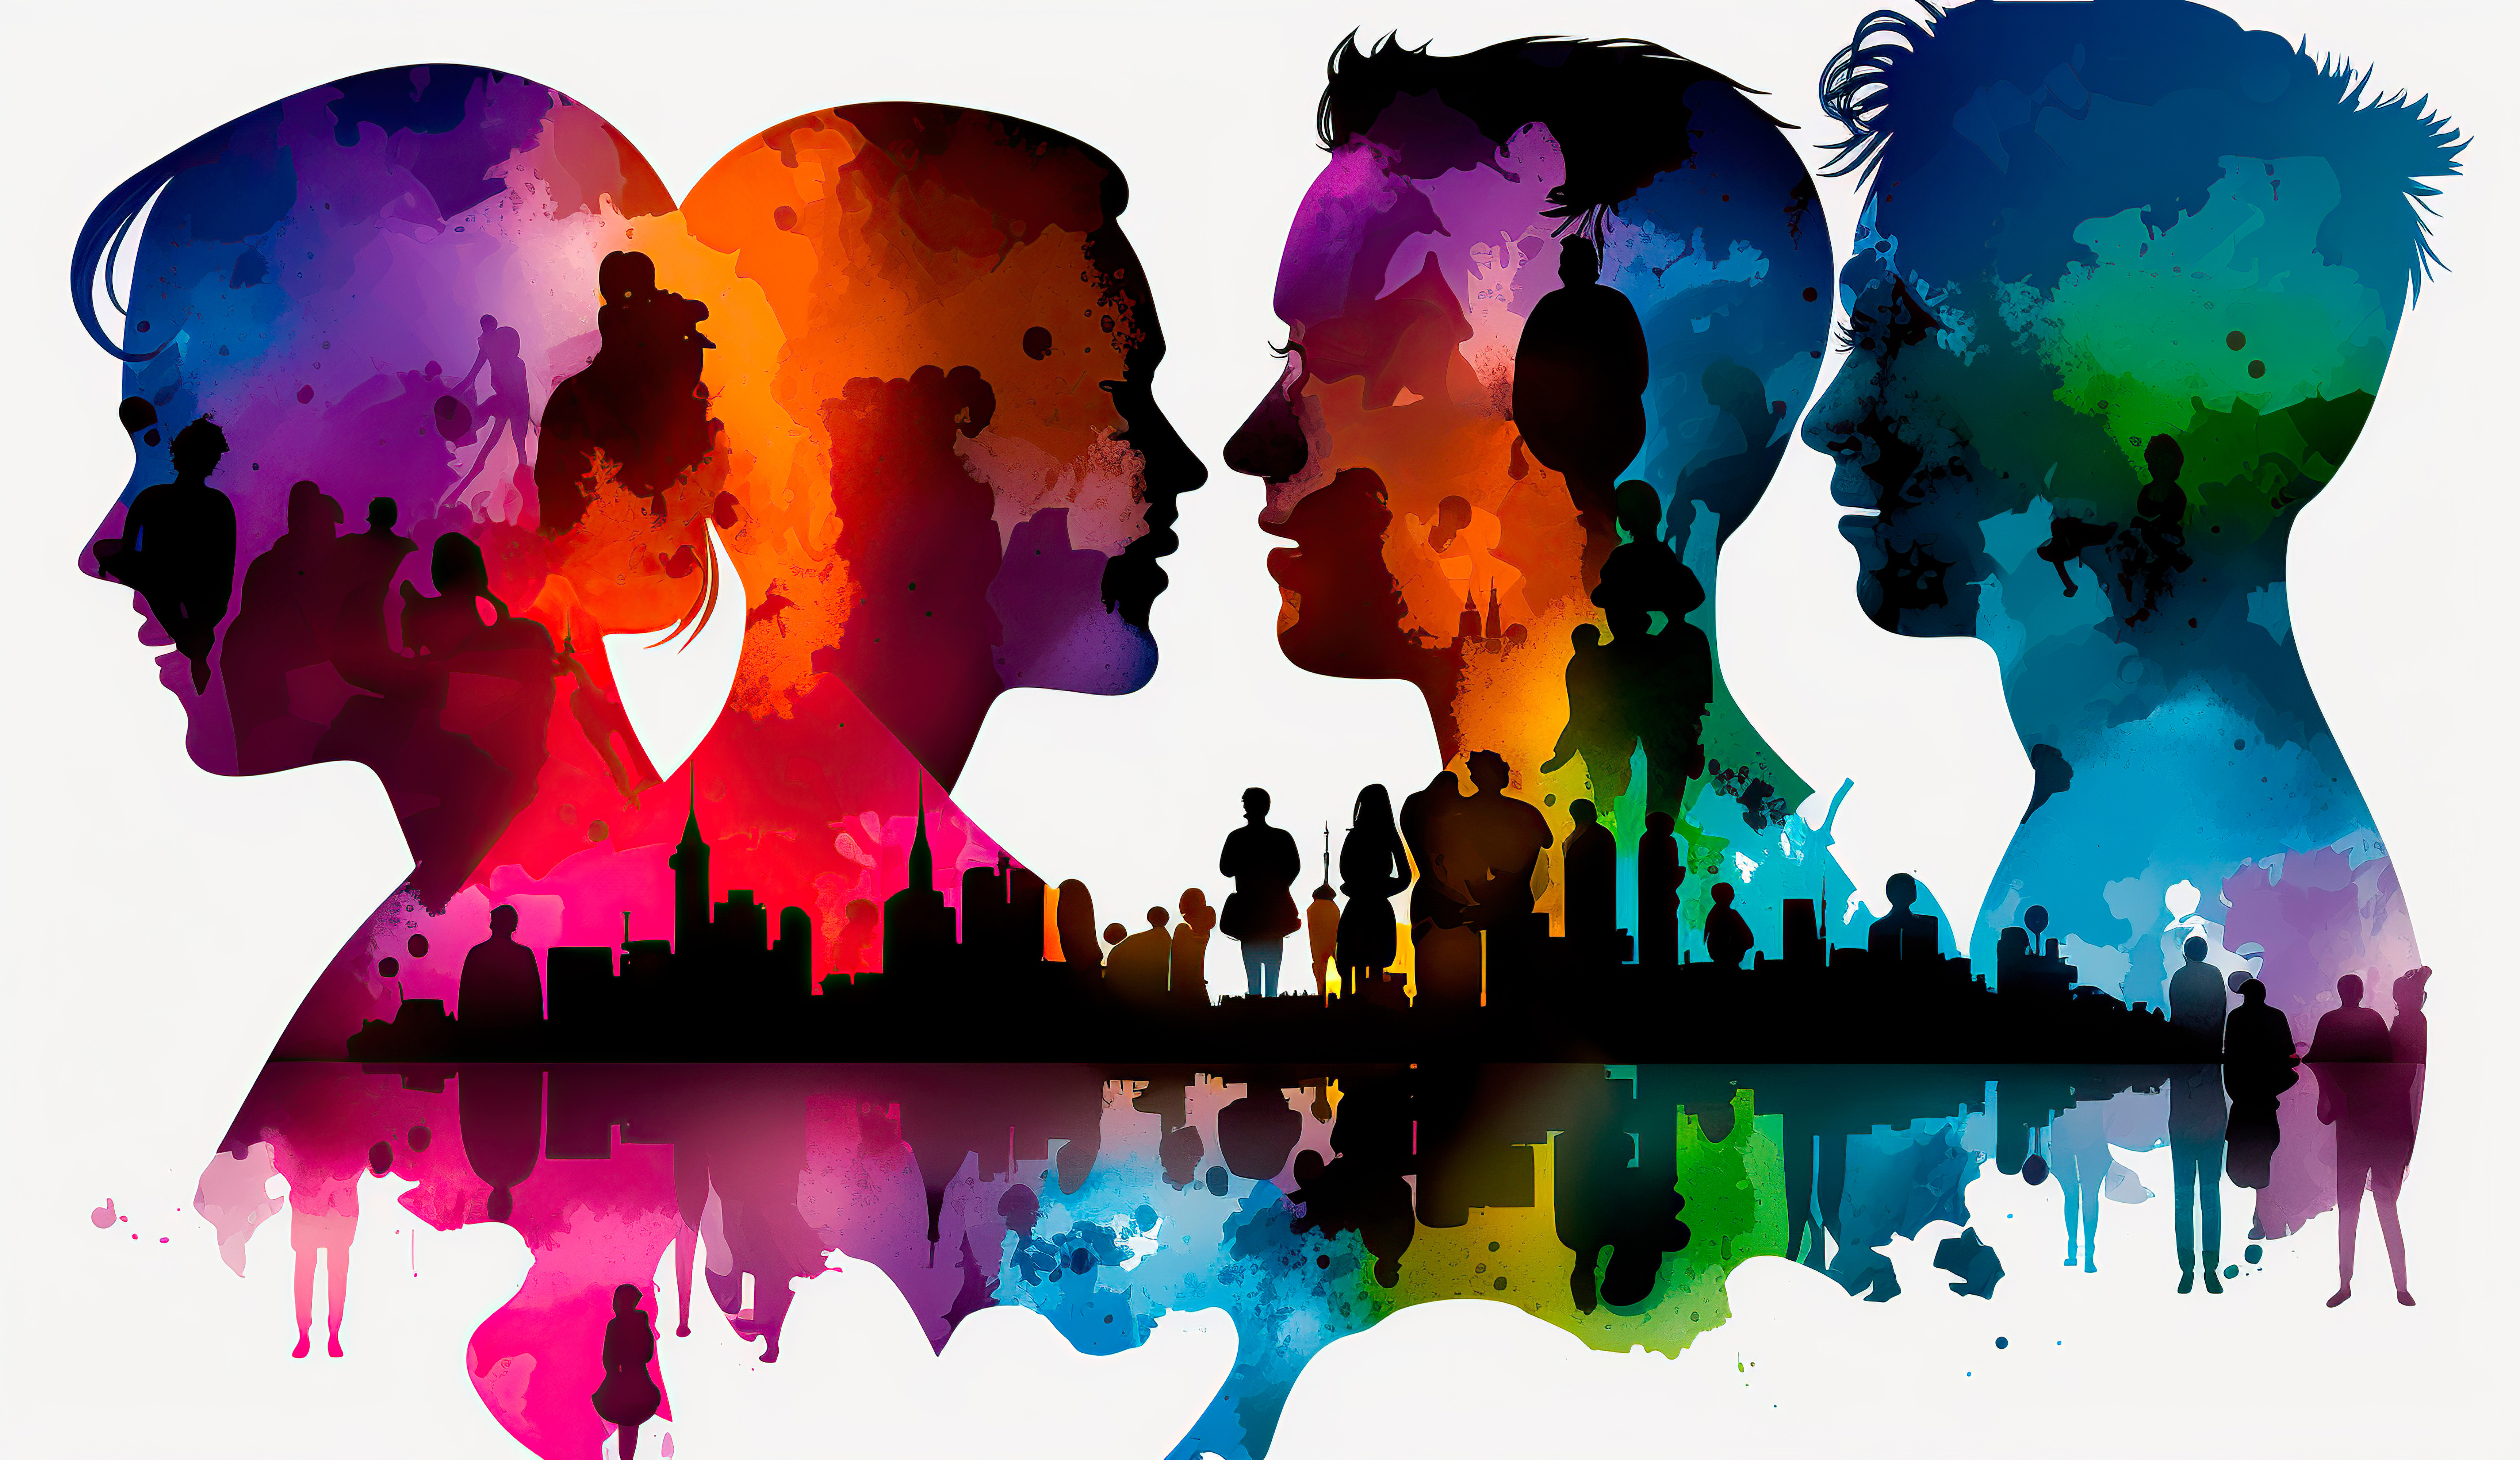 Abstrakter bunter Hintergrund mit Silhouetten von Menschen in Farben der LGBT-Flagge.